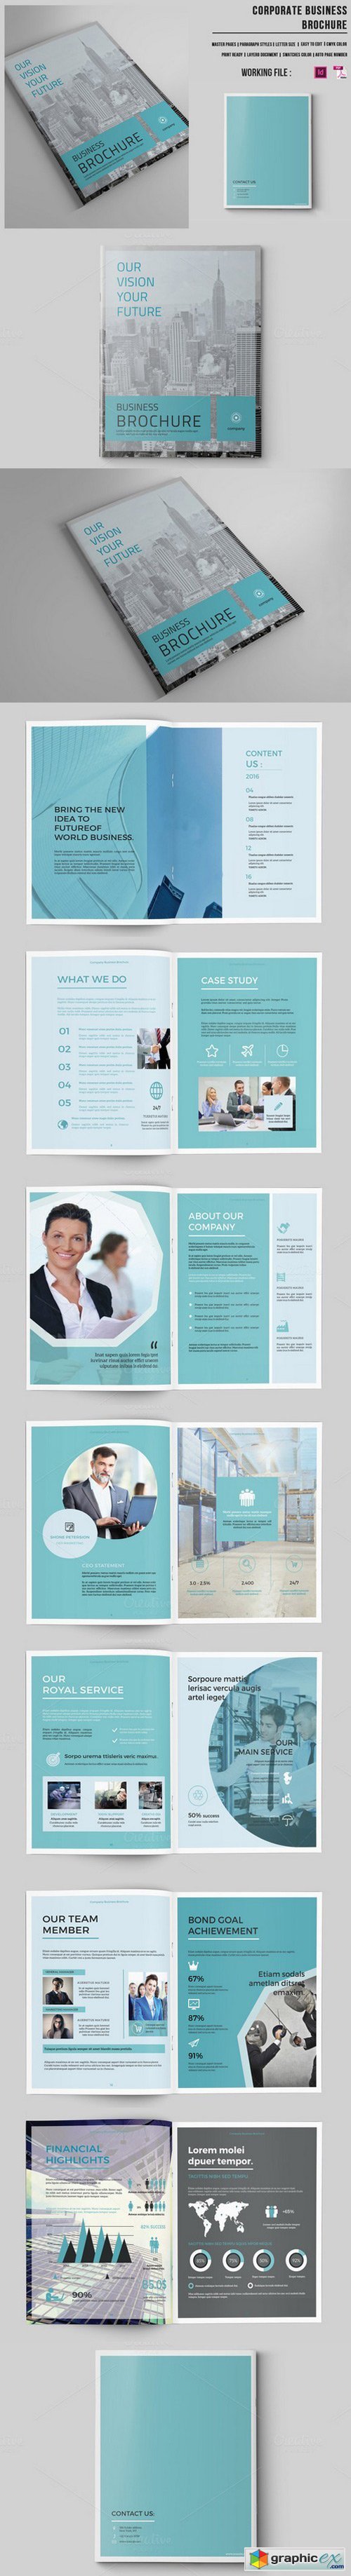 Business Brochure | 16 Pages |-v421